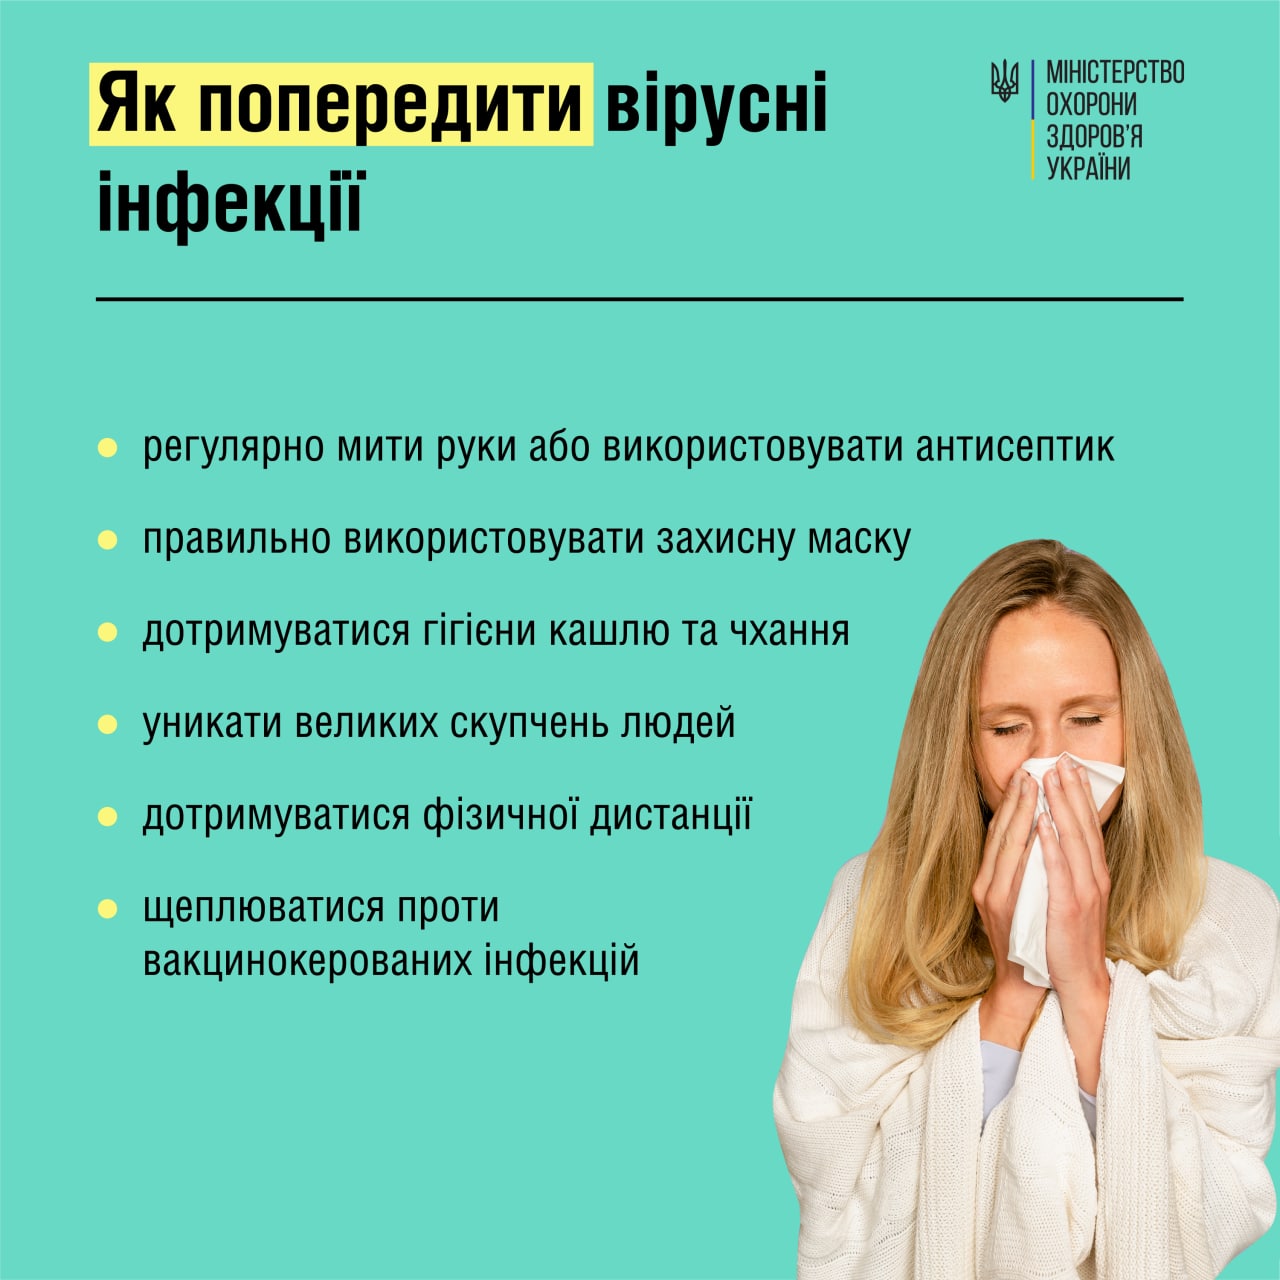 Як попередити гострі вірусні інфекції - рекомендації МОЗ України